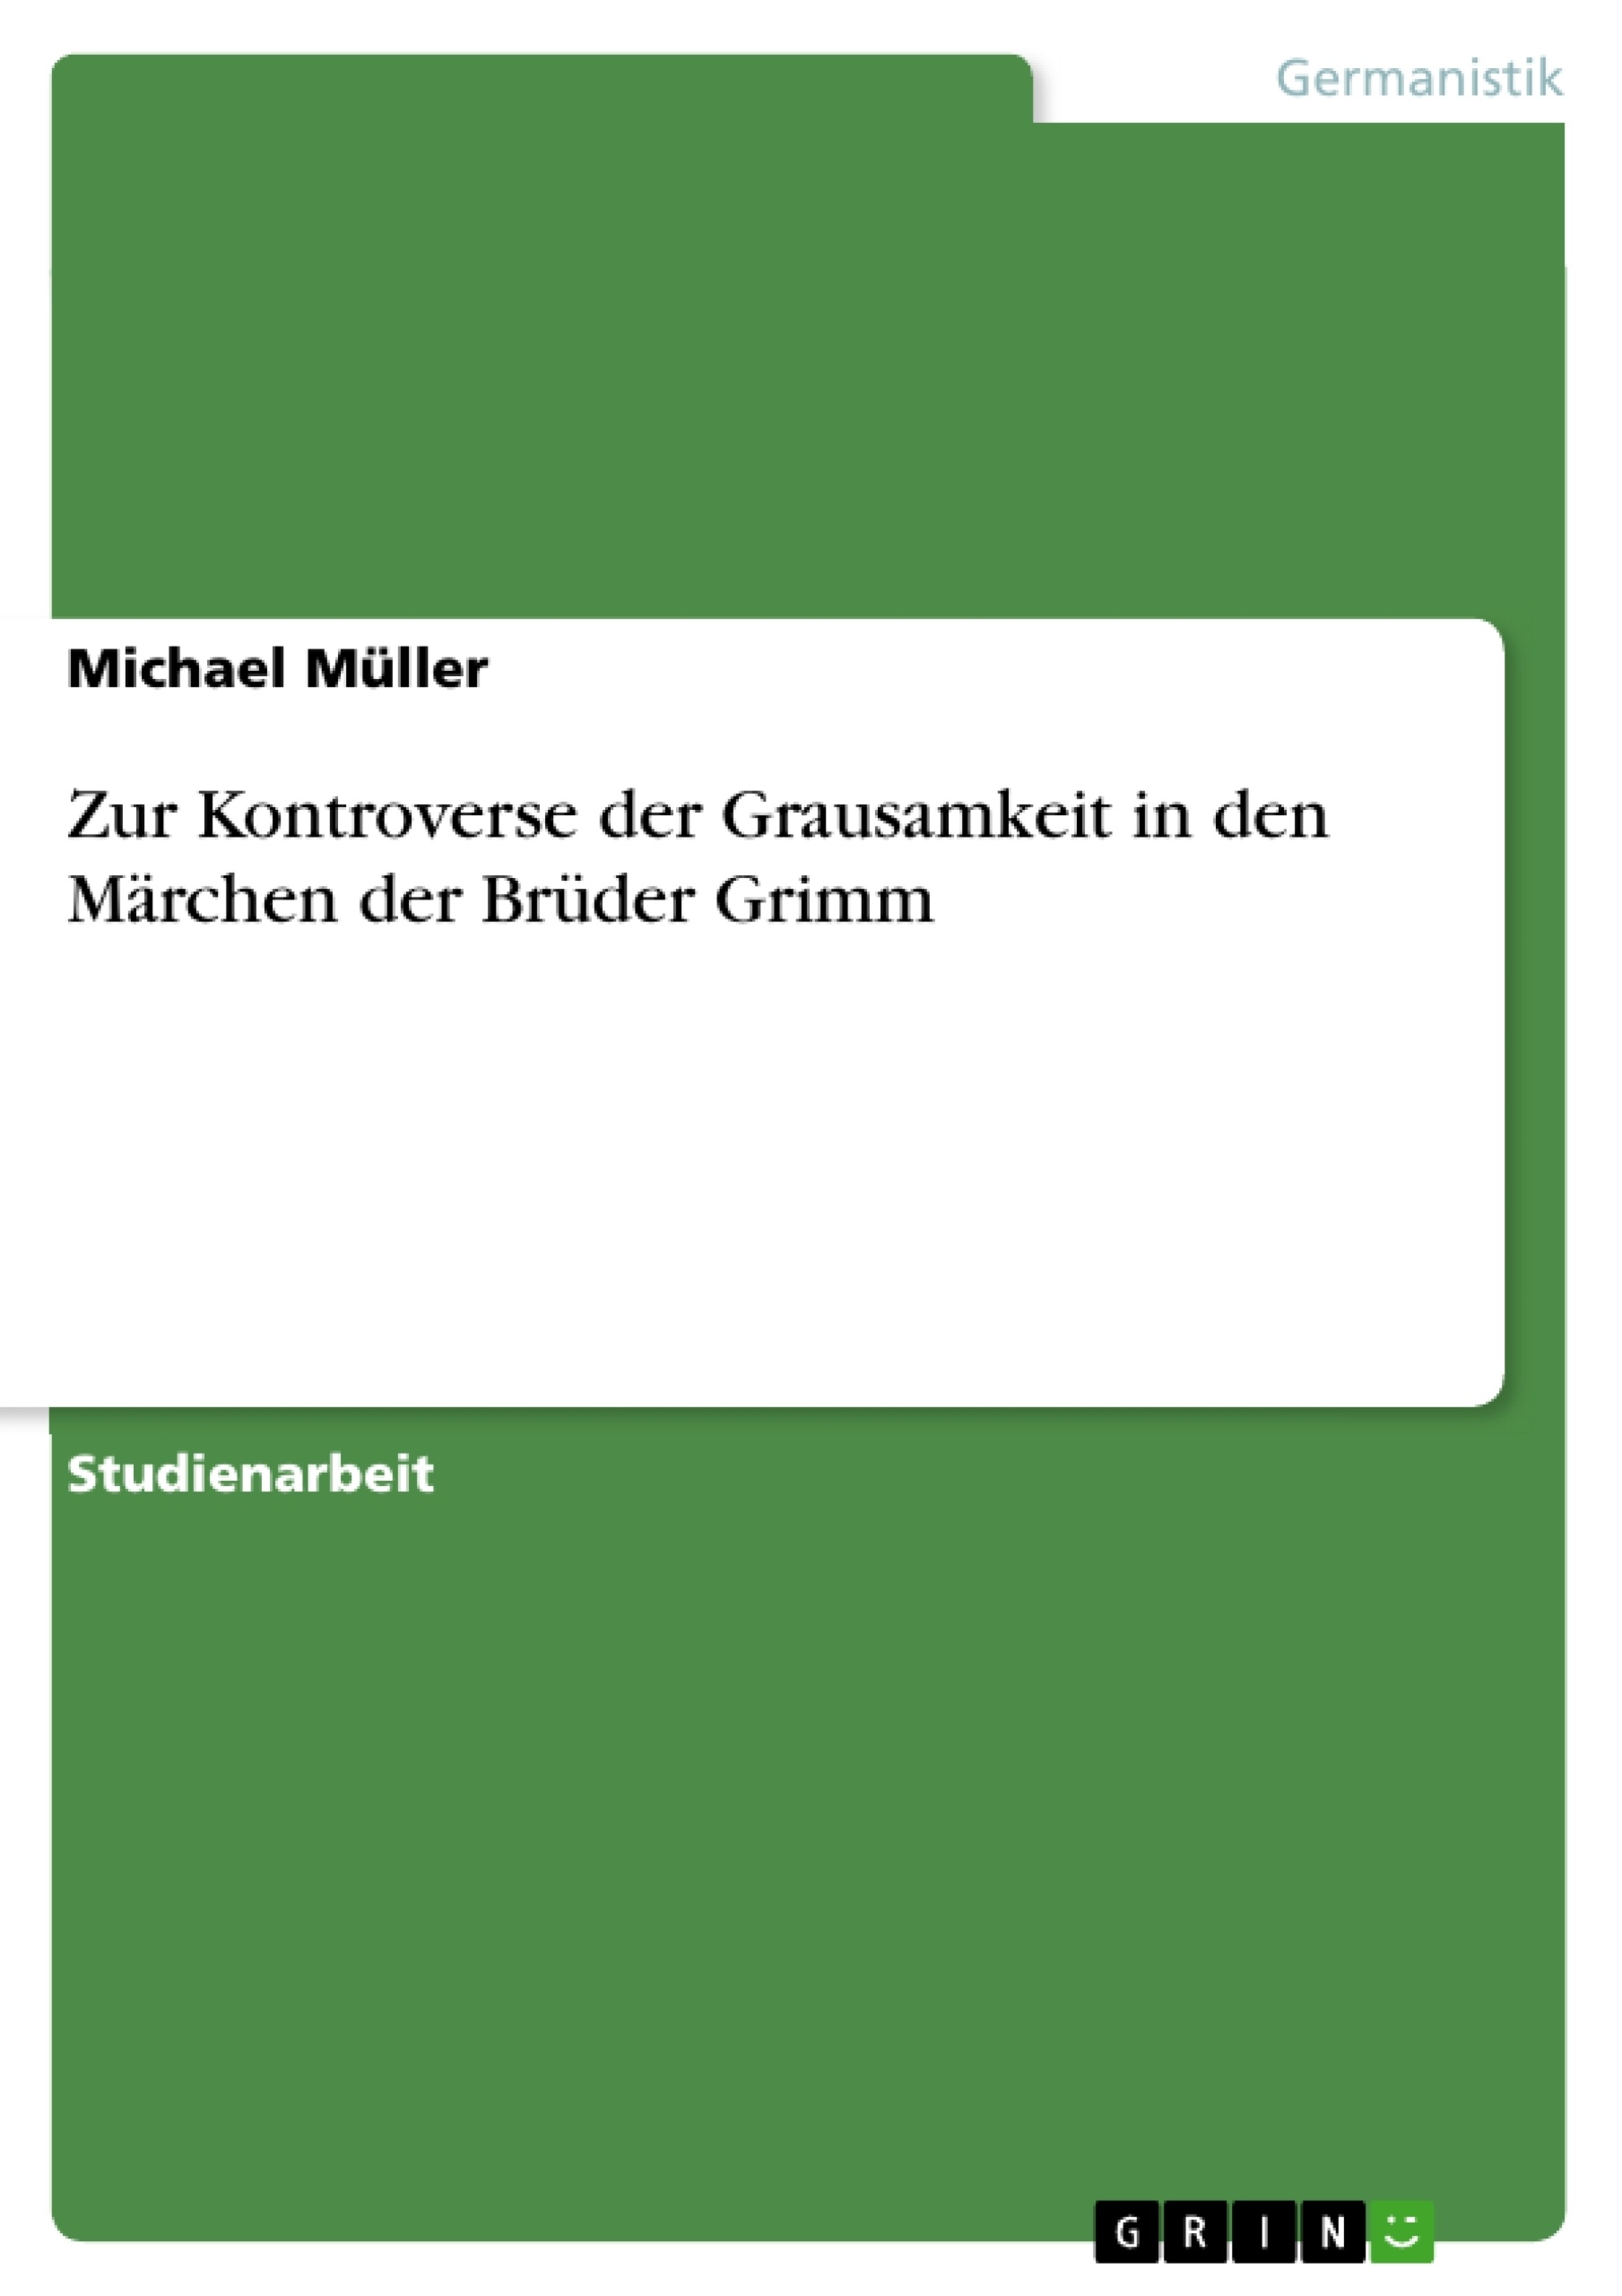 Title: Zur Kontroverse der Grausamkeit in den Märchen der Brüder Grimm